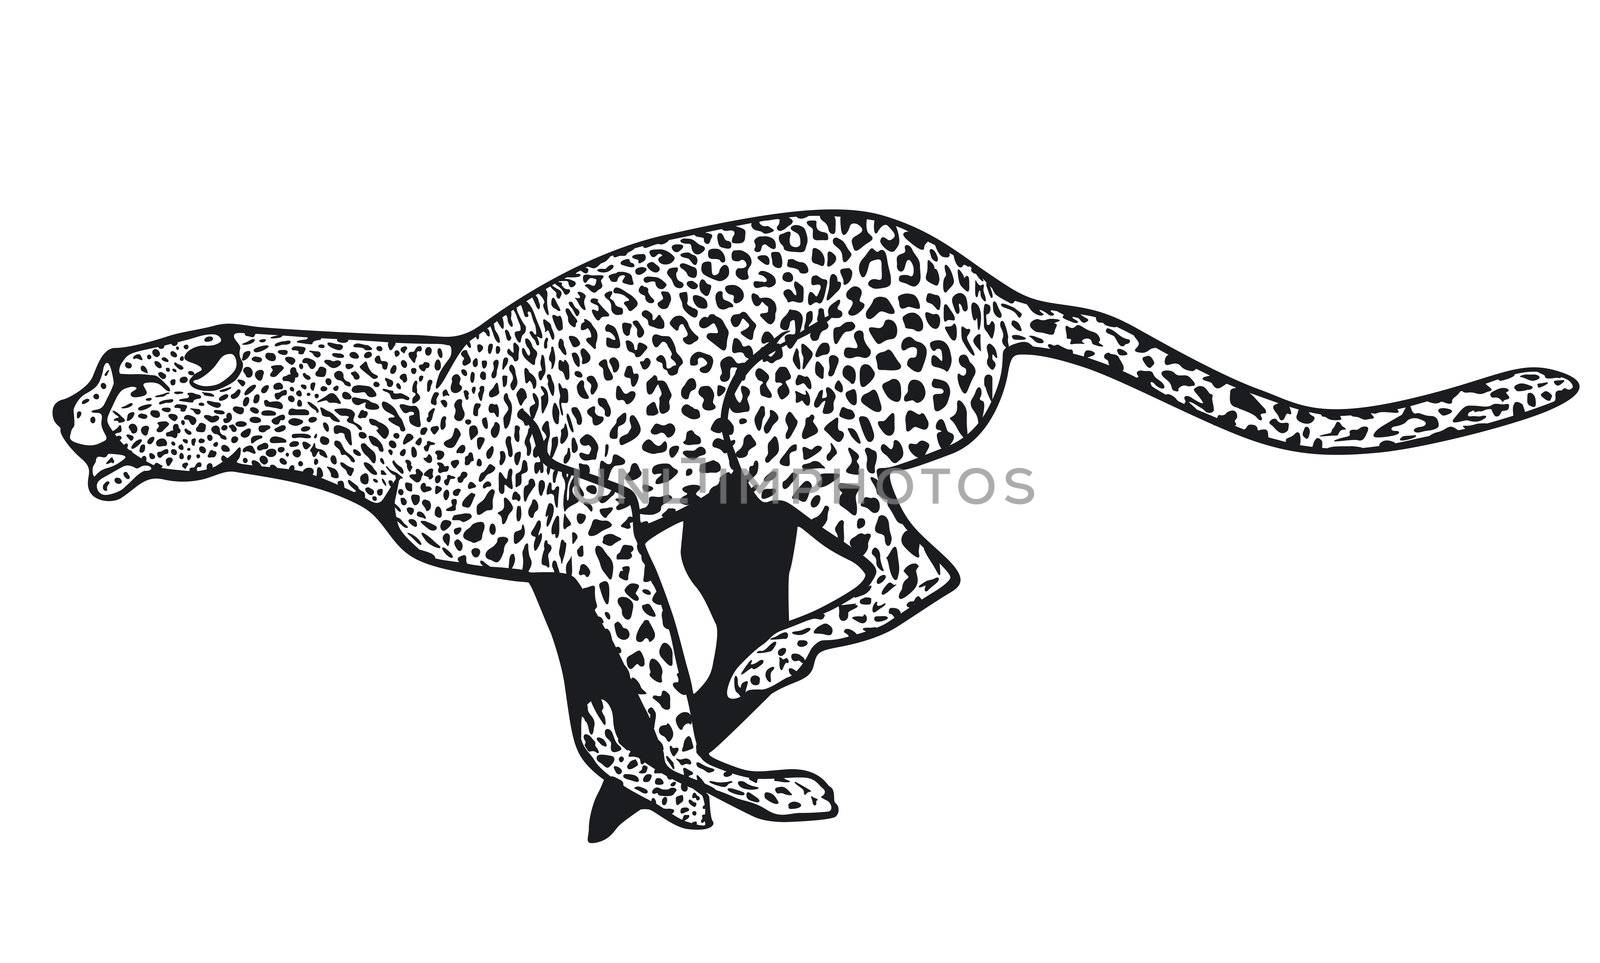 cheetah by scusi